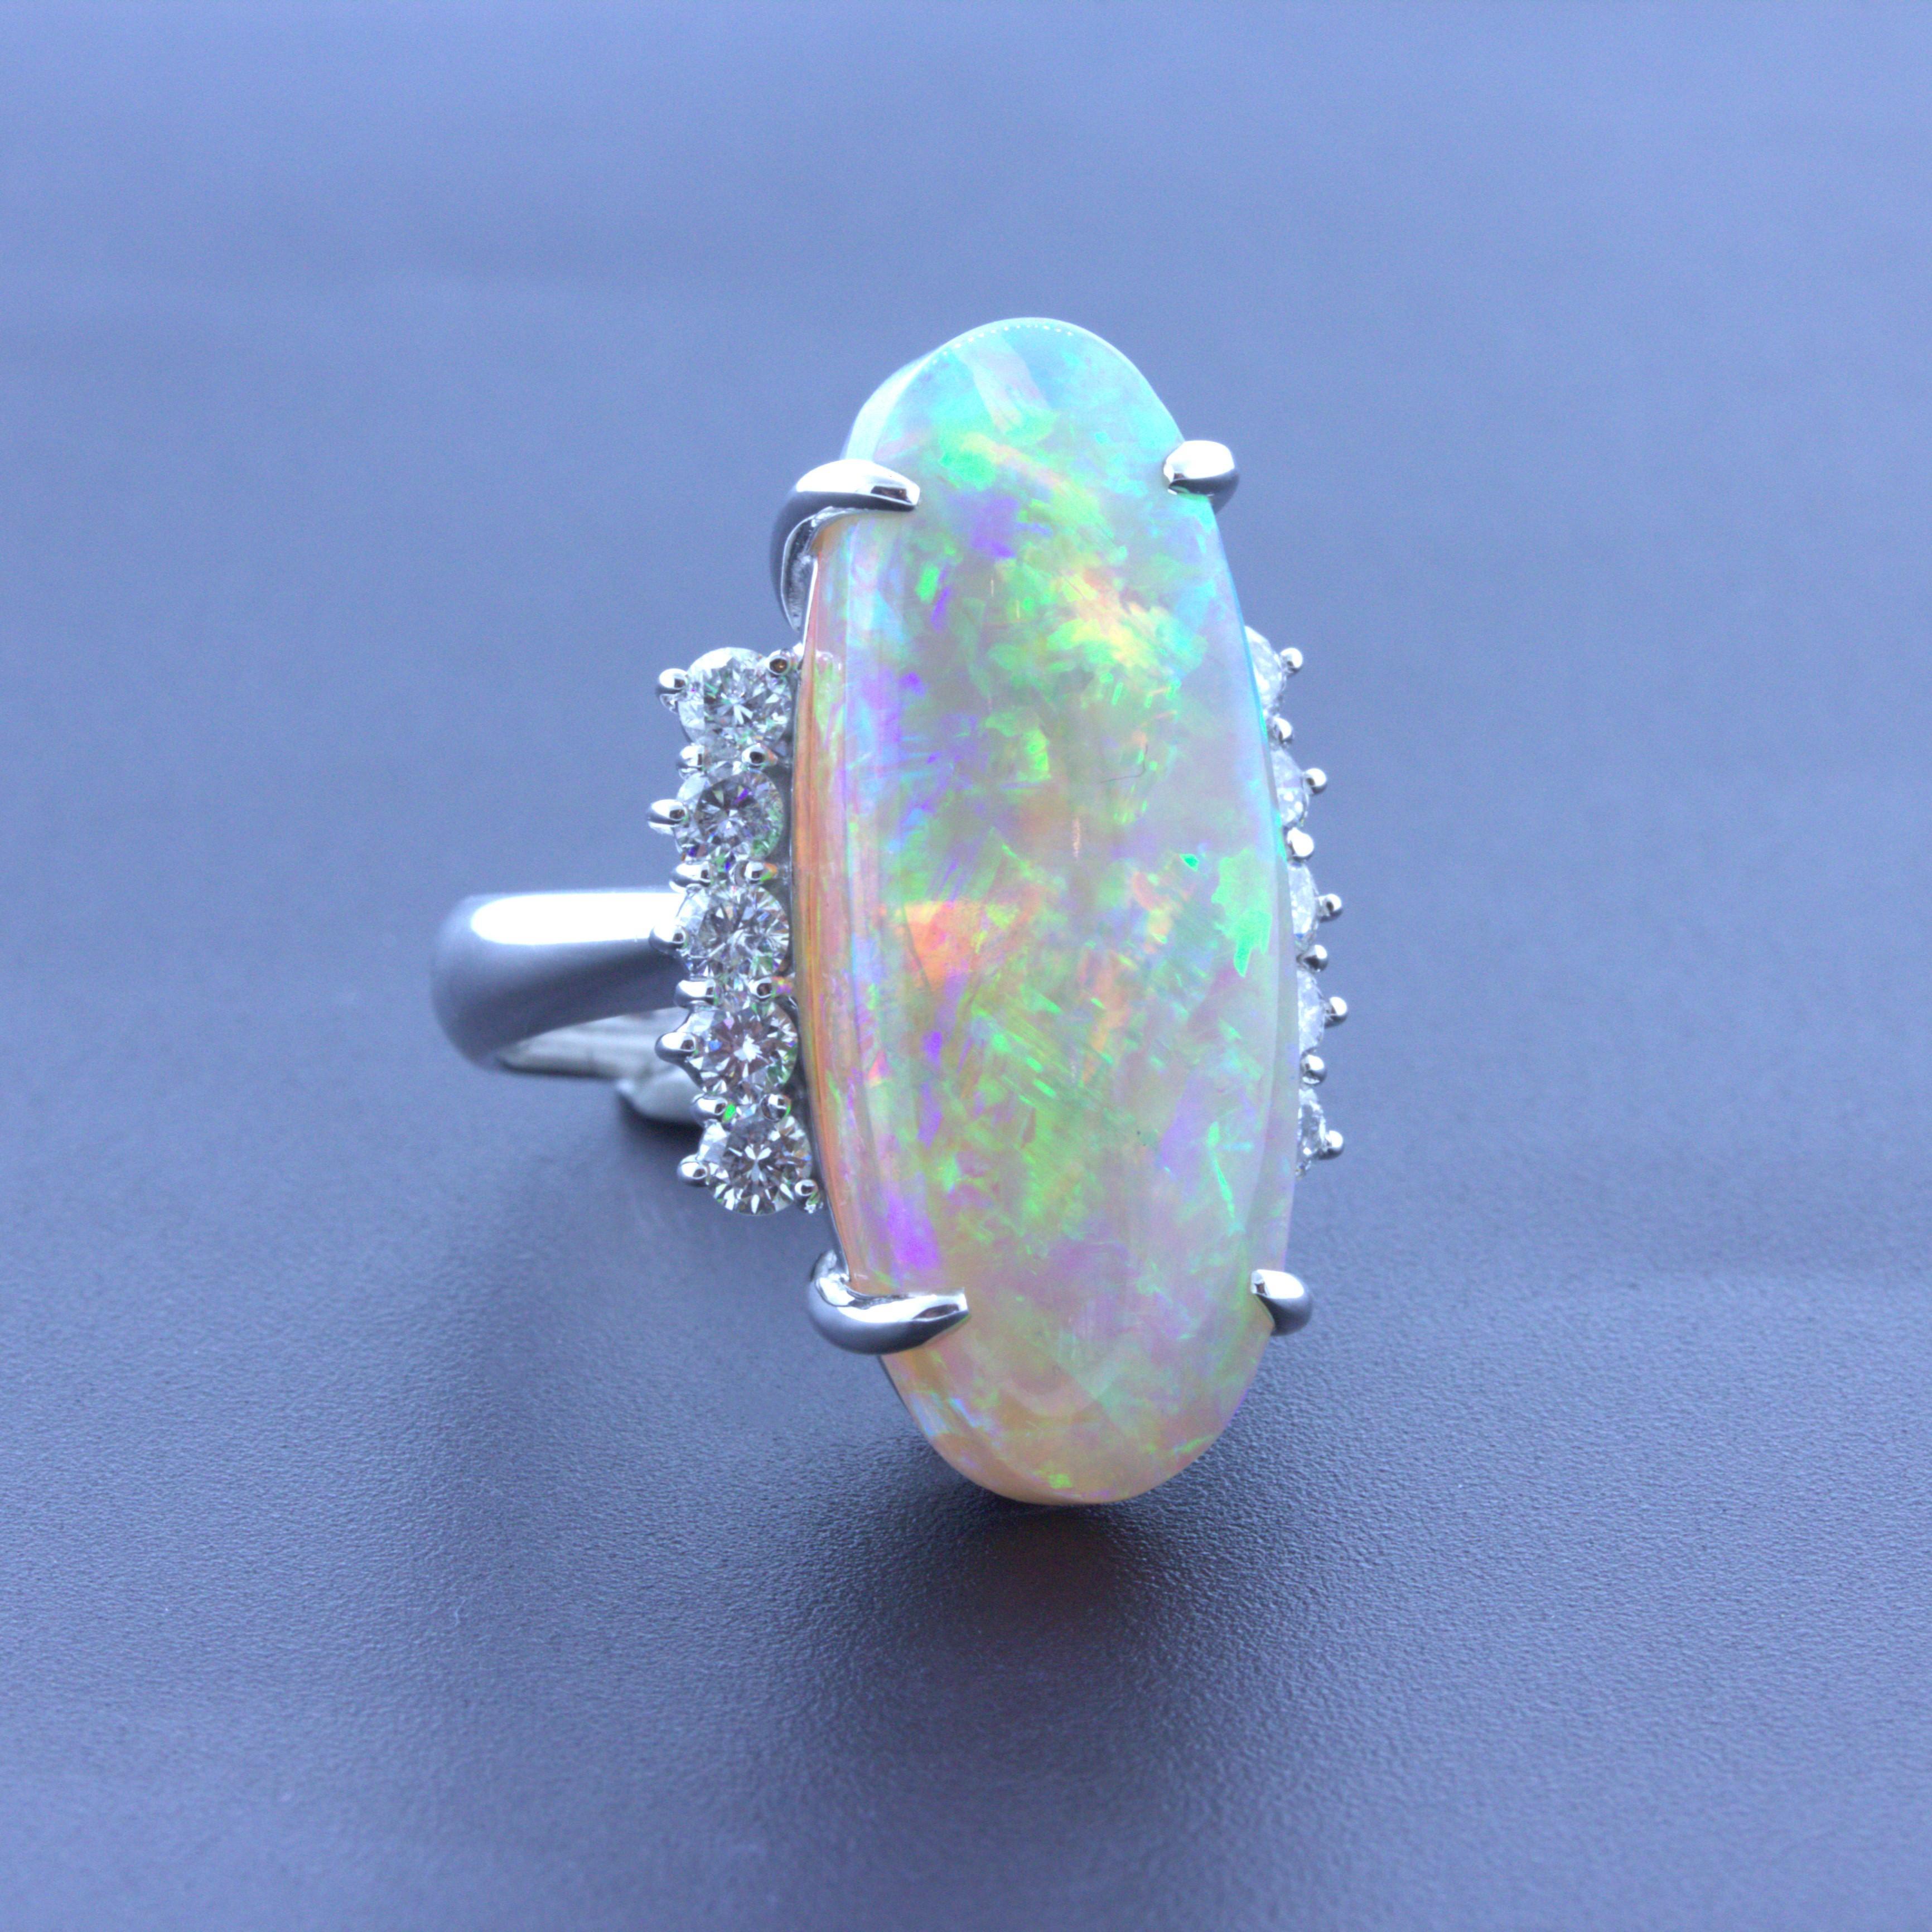 Tout simplement magnifique ! Cette magnifique bague en platine est ornée d'une grande et impressionnante opale australienne au jeu de couleurs époustouflant. L'opale pèse un poids remarquable de 15,36 carats et présente un incroyable jeu de